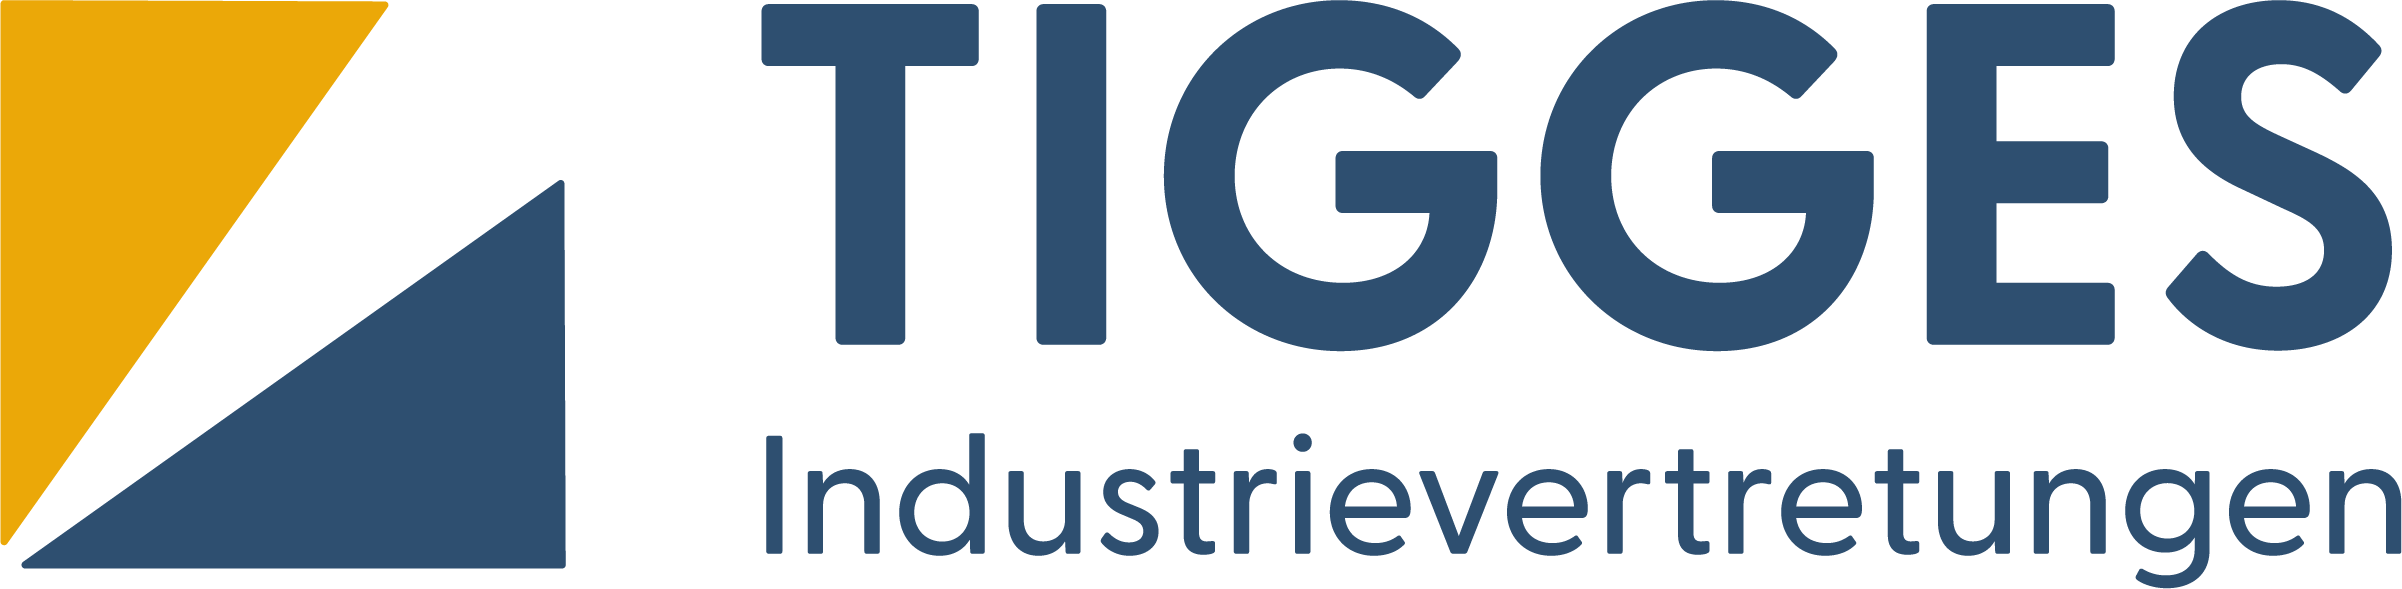 Industrievertretungen Tigges Logo - Lösungen für den professionellen Möbelbau und exklusive Markenvertretungen